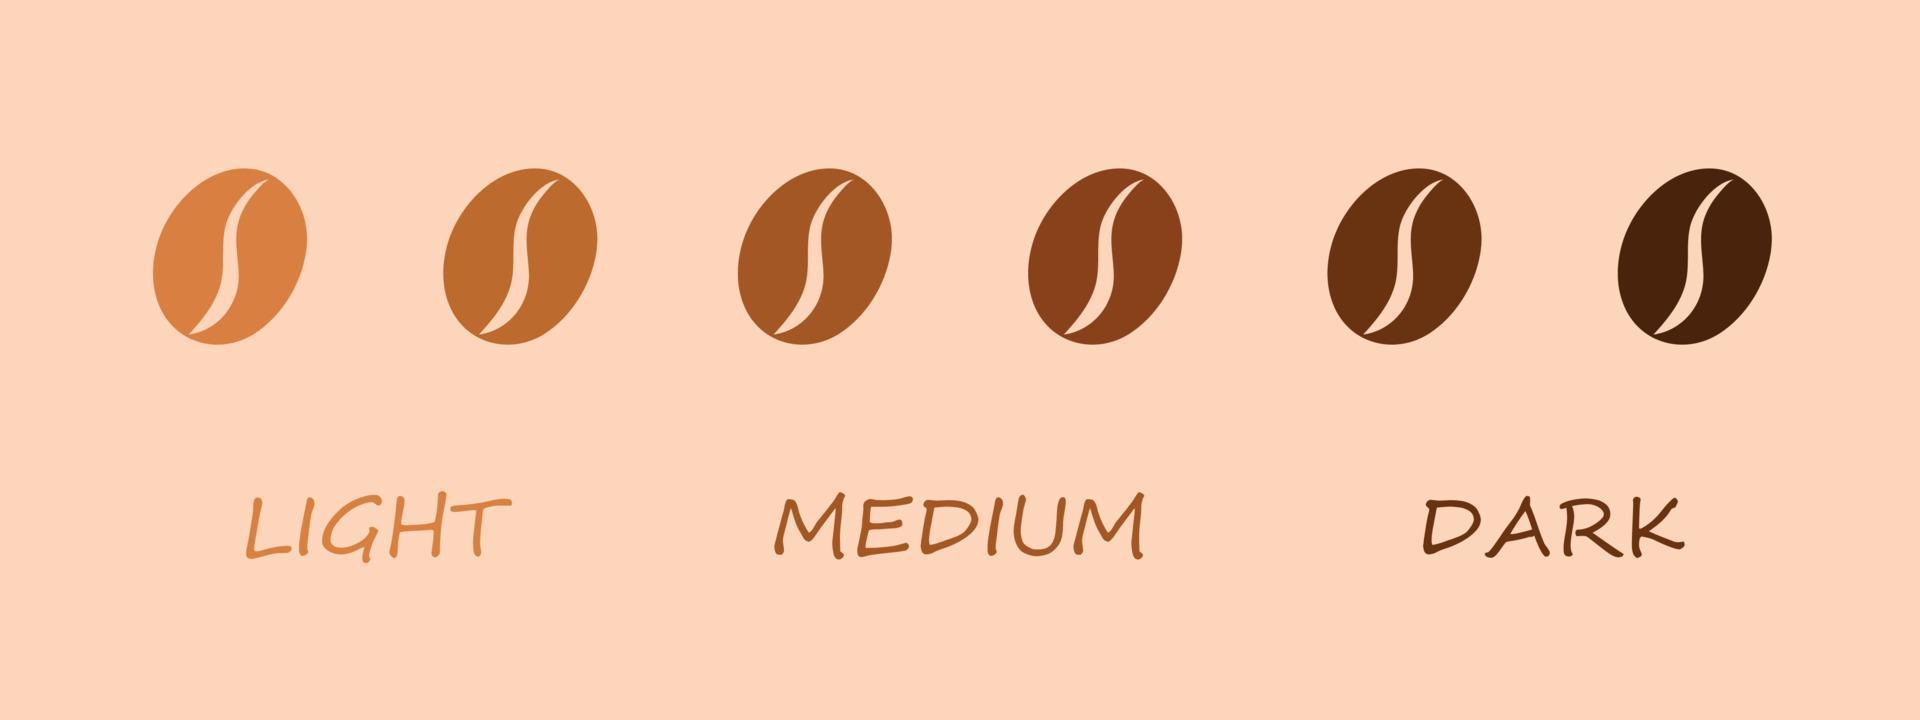 Kaffeeröstgrad - helles, mittleres, dunkles Symbol. Vektor-Illustration. Kaffeebohnen isoliert auf beigem Hintergrund. vektor